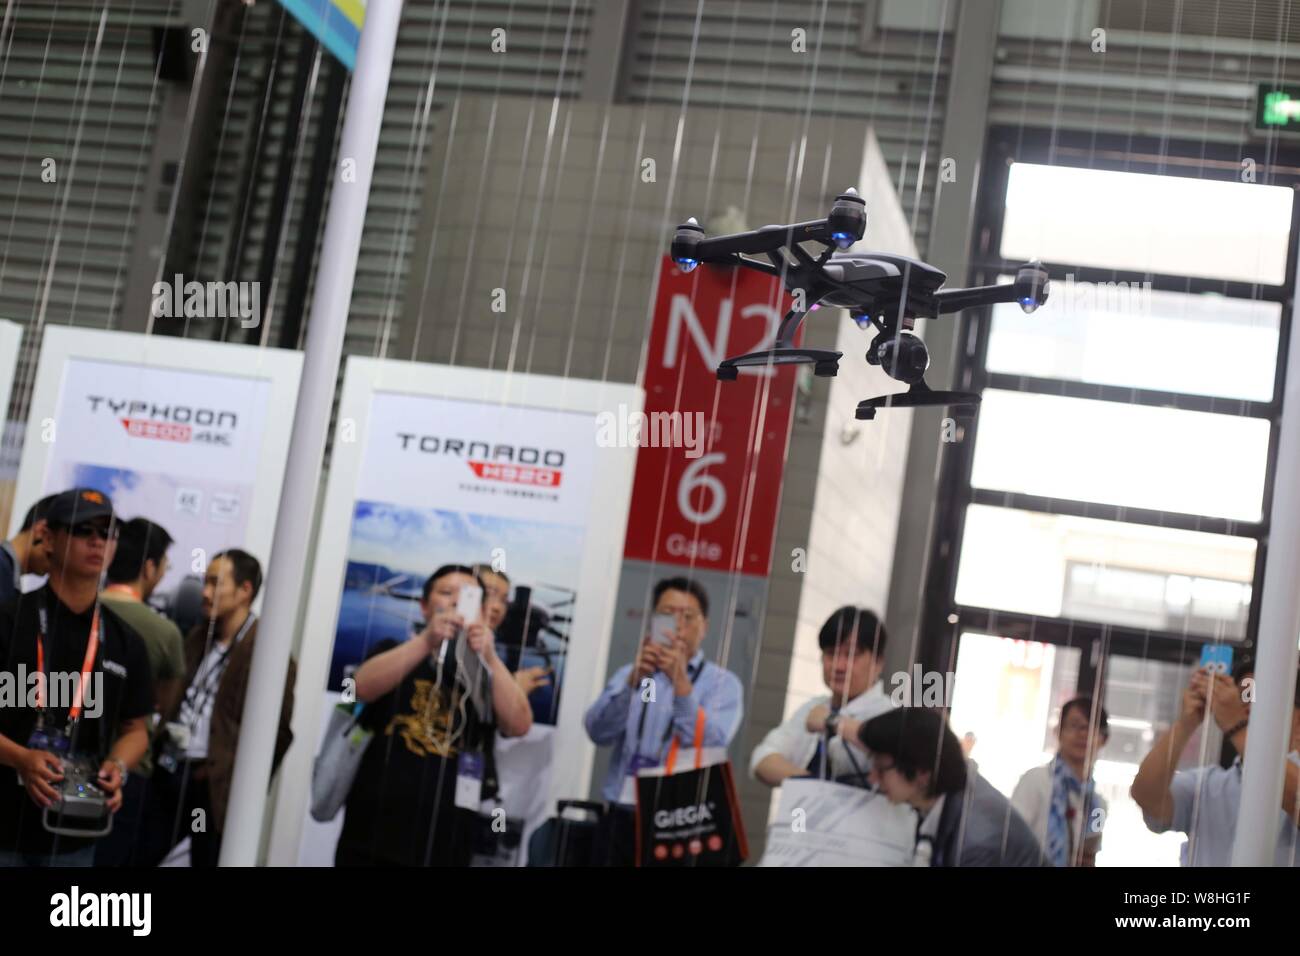 Una fotocamera dotata di antenna senza equipaggio veicolo (UAV), o drone, di DJI (Dajiang innovazioni), posiziona il puntatore del mouse durante l'International Consumer Electronics Show Asi Foto Stock